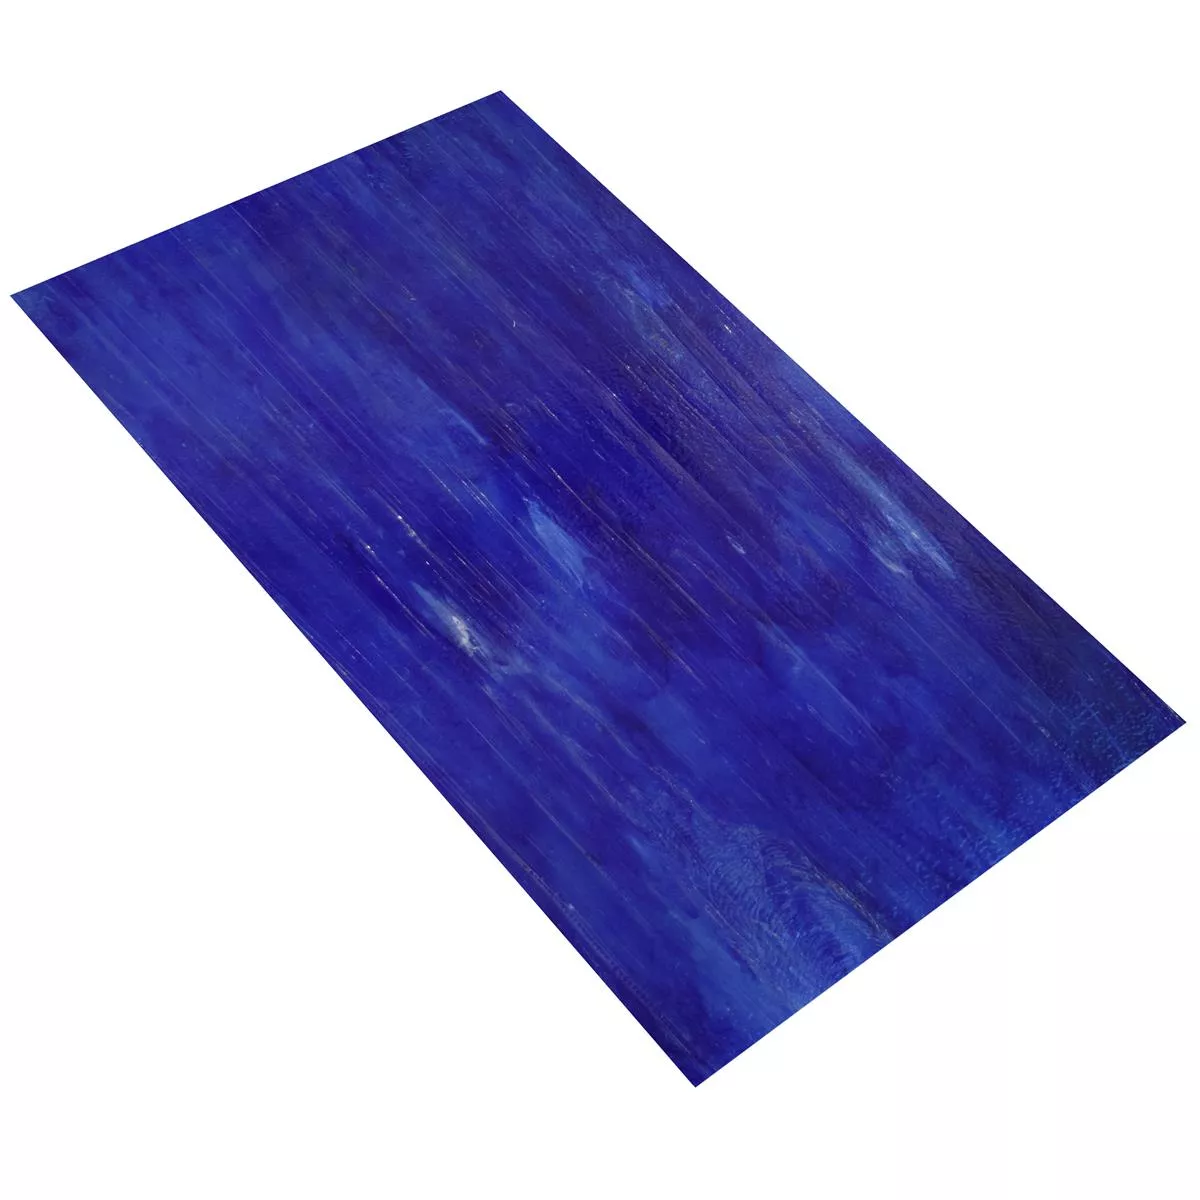 Vidro Azulejos Trend-Vi Supreme Pacific Blue 30x60cm